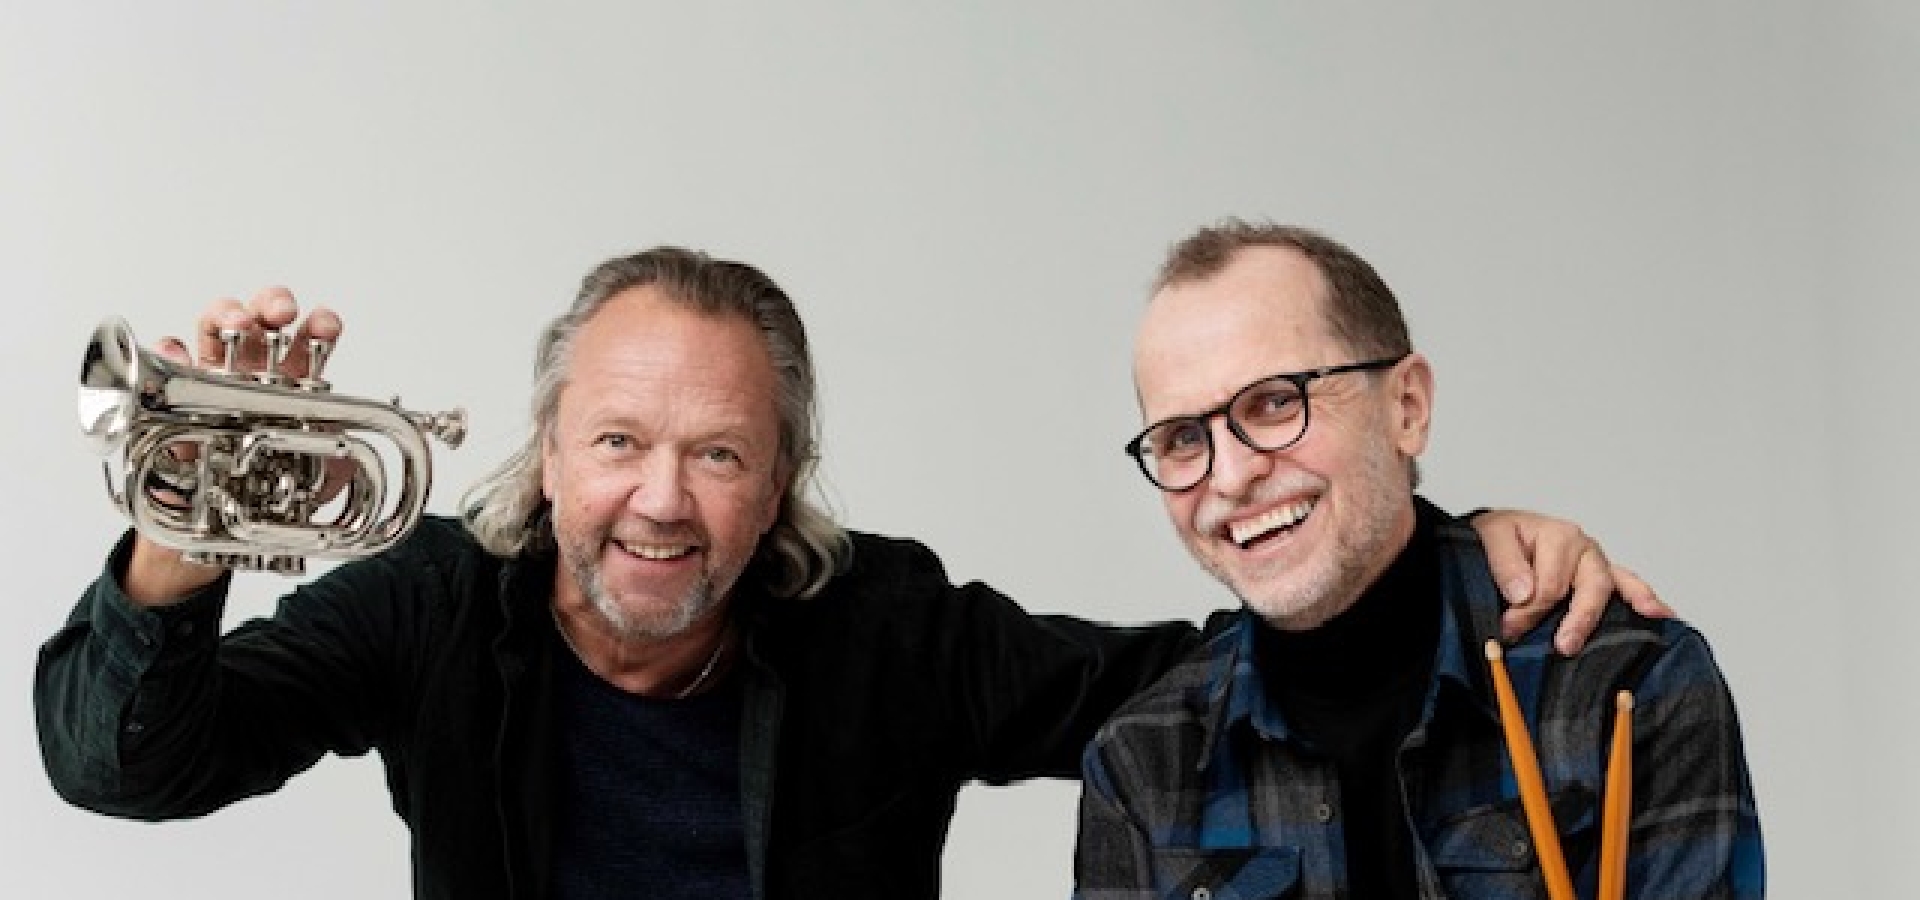 Ernst Wiggo Sandbakk and Lasse Berre. Photo: BERRE Kommunikasjonsbyrå